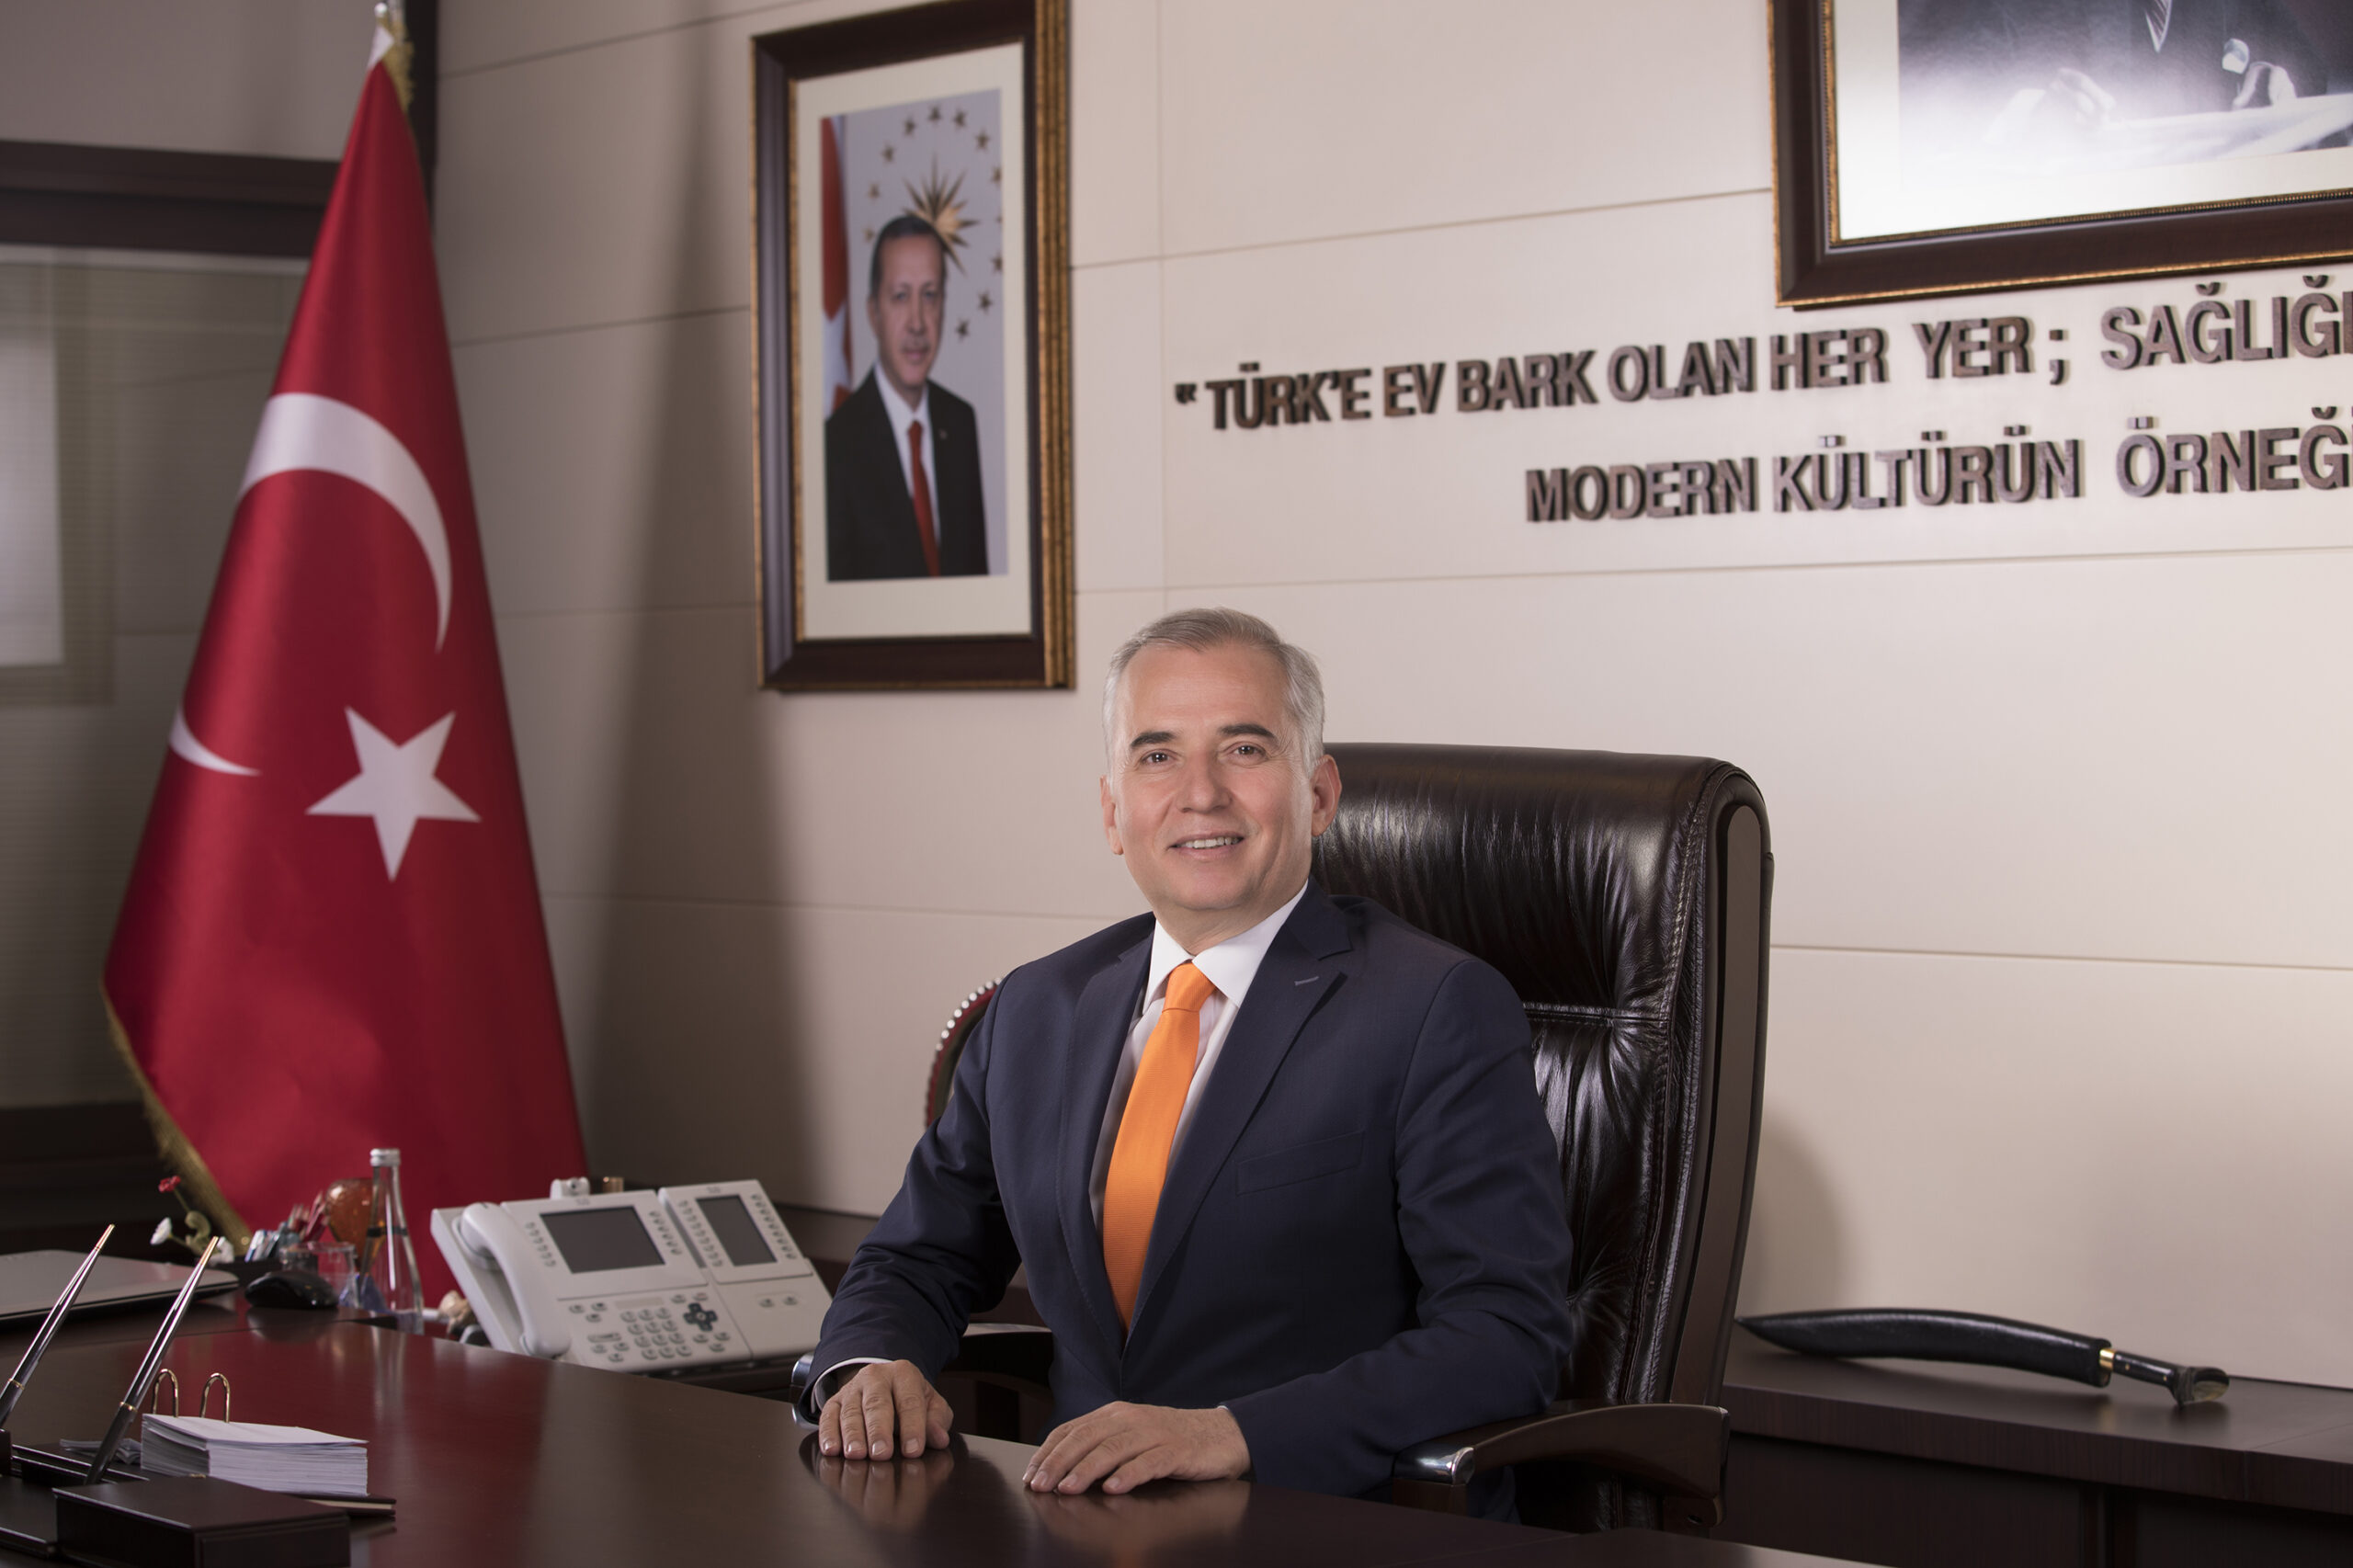 Denizli Buyuksehir Belediye Baskani Osman Zolan scaled - Başkan Zolan’dan Regaip Kandili mesajı